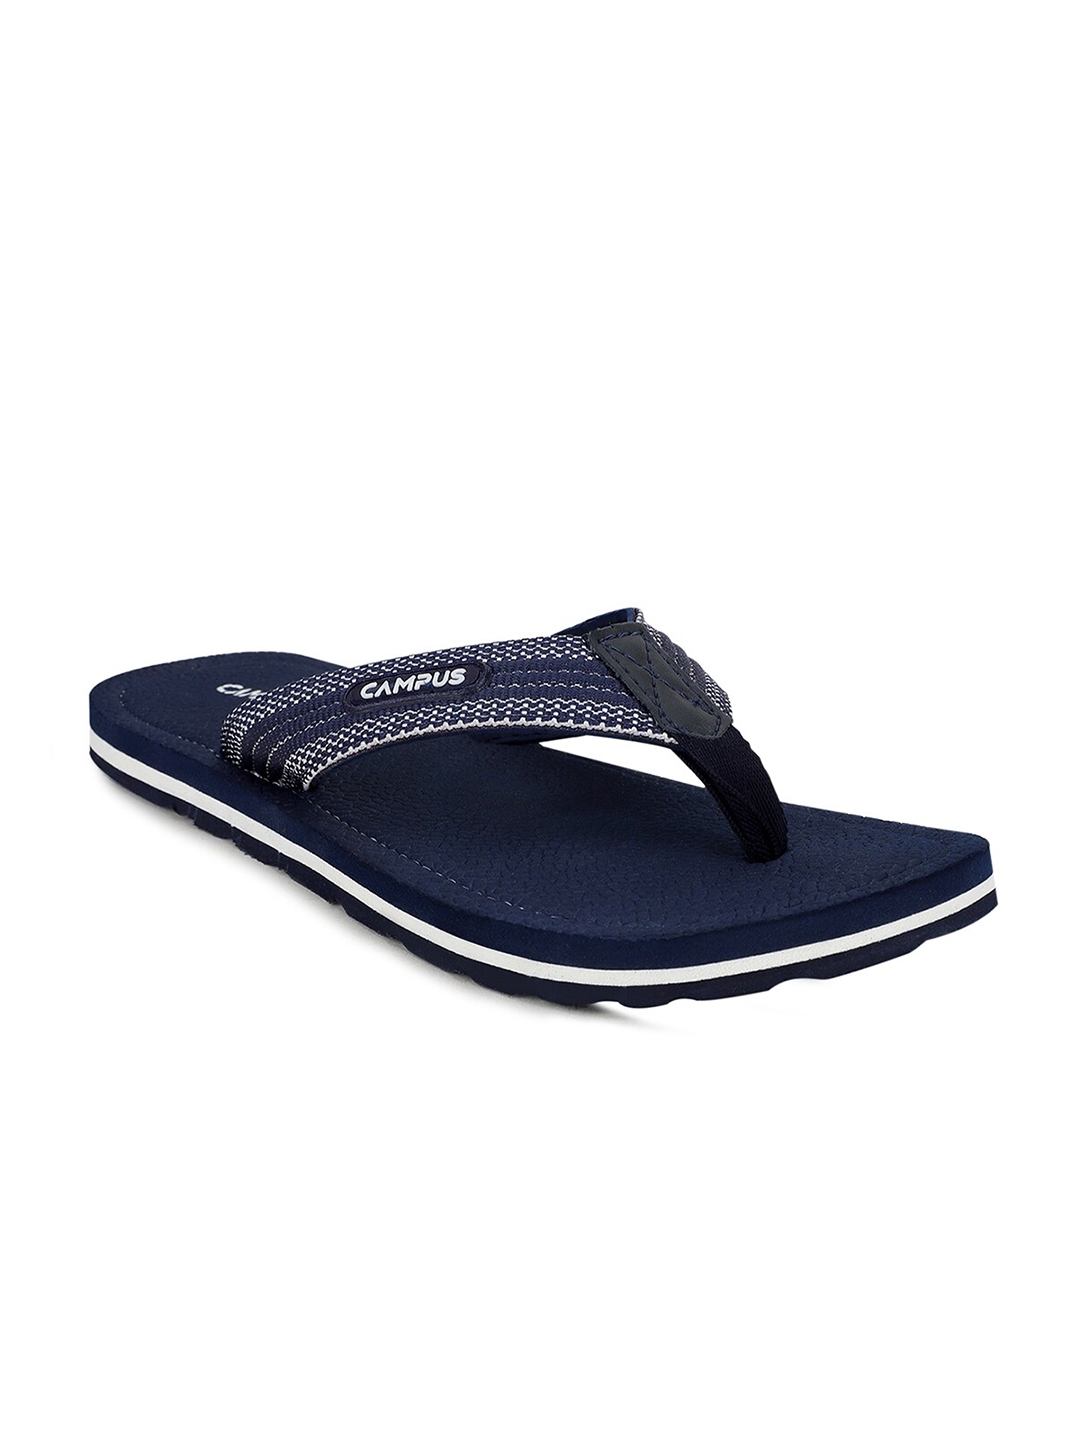 Buy Campus Men Navy Blue & White Room Slippers - Flip Flops for Men ...